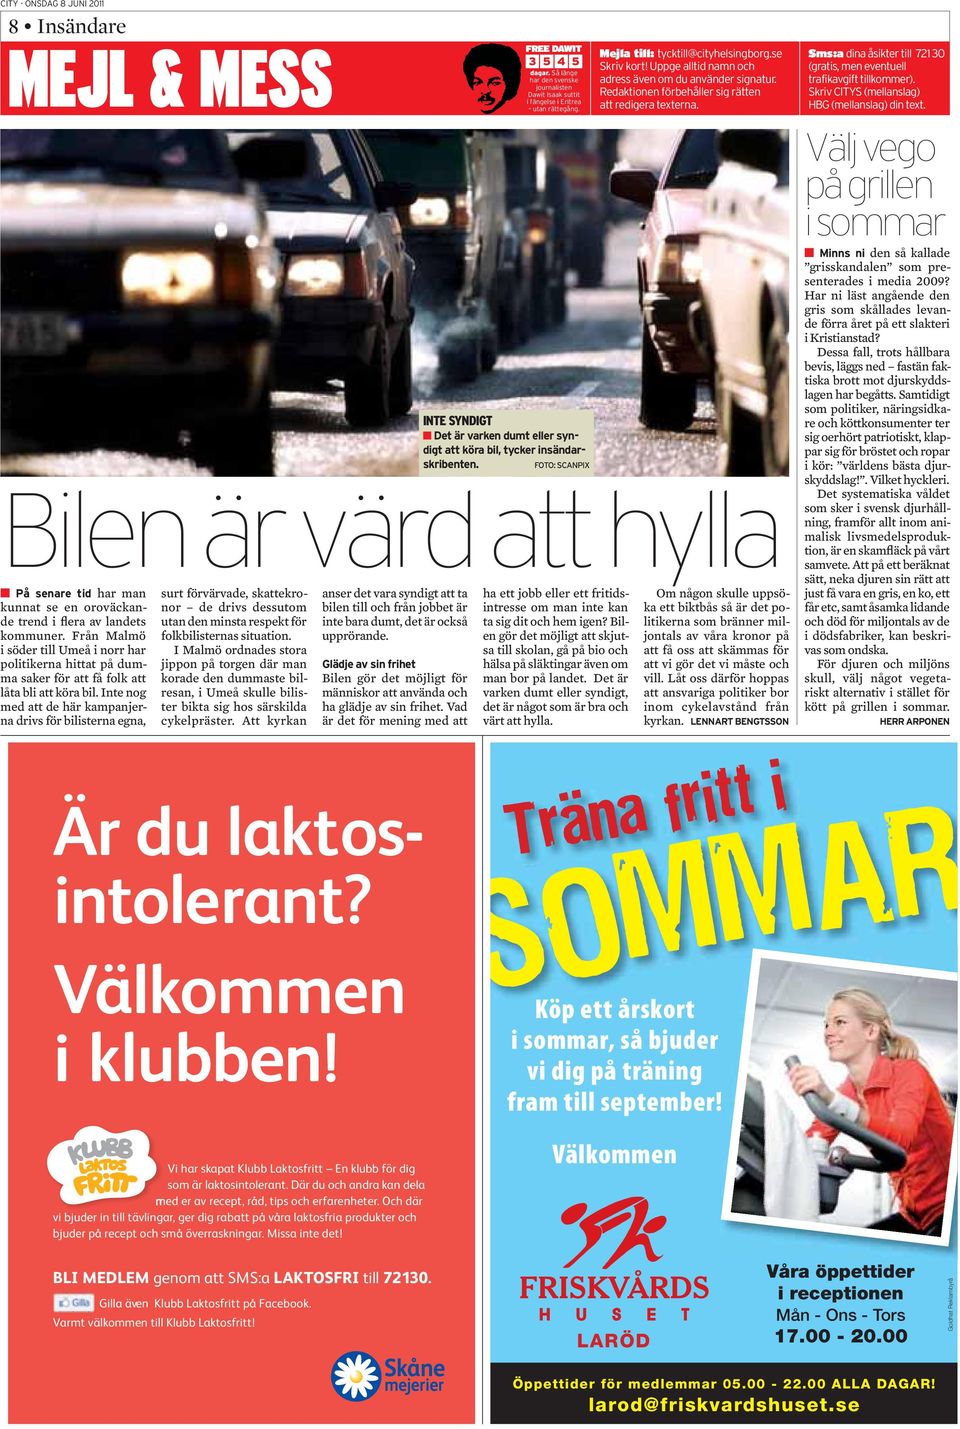 I Malmö ordnades stora jippon på torgen där man korade den dummaste bilresan, i Umeå skulle bilister bikta sig hos särskilda cykelpräster.